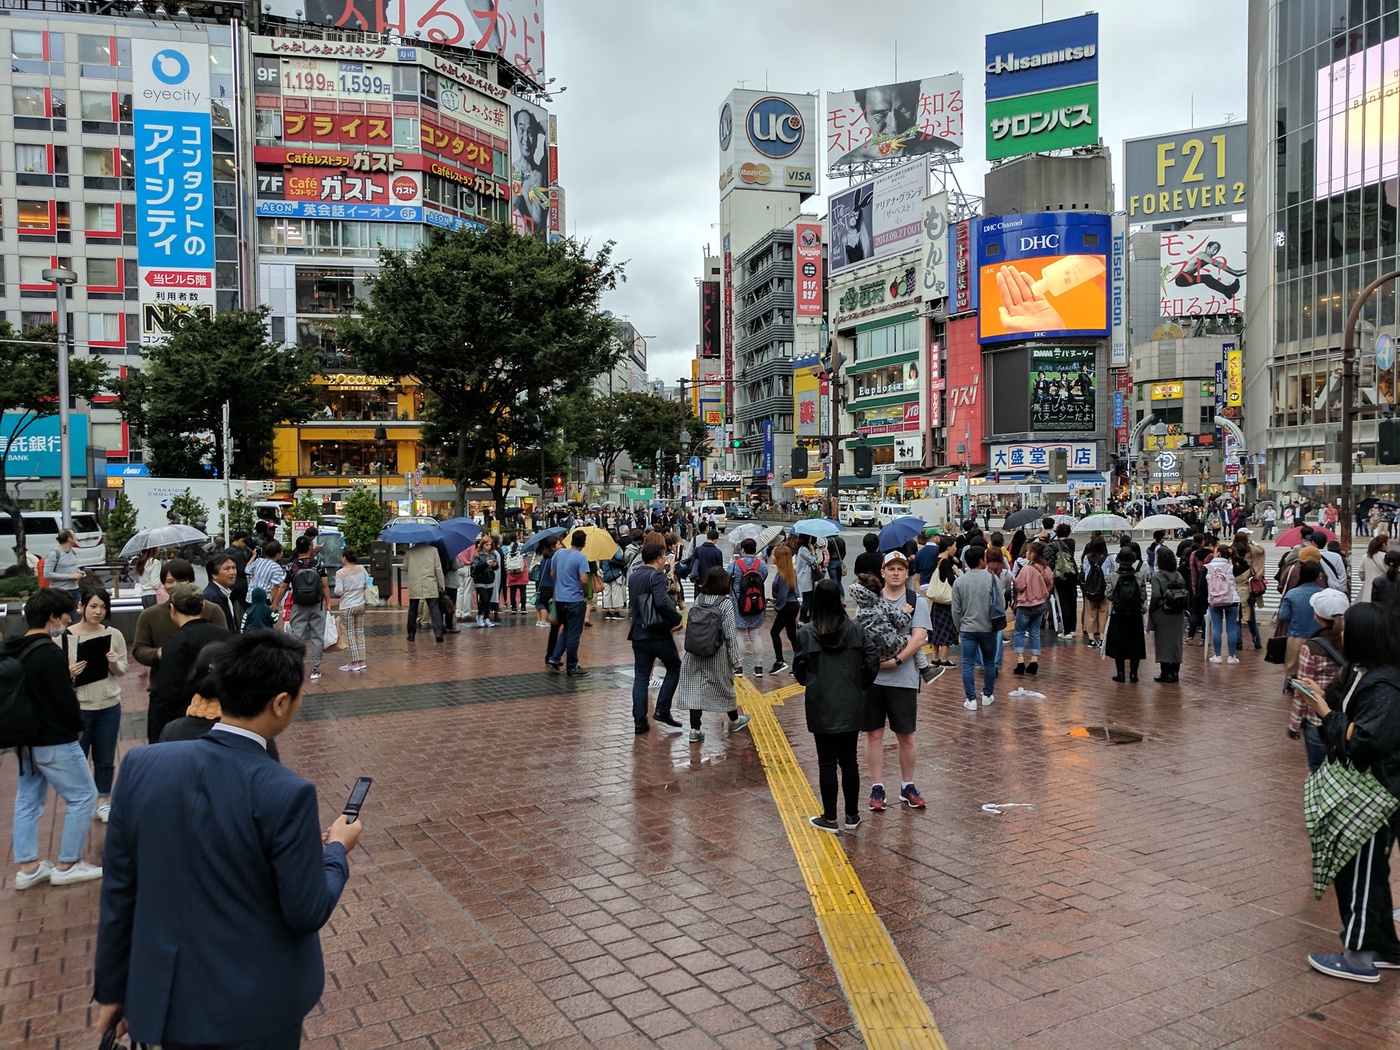 MW #197: Regen in Tokyo